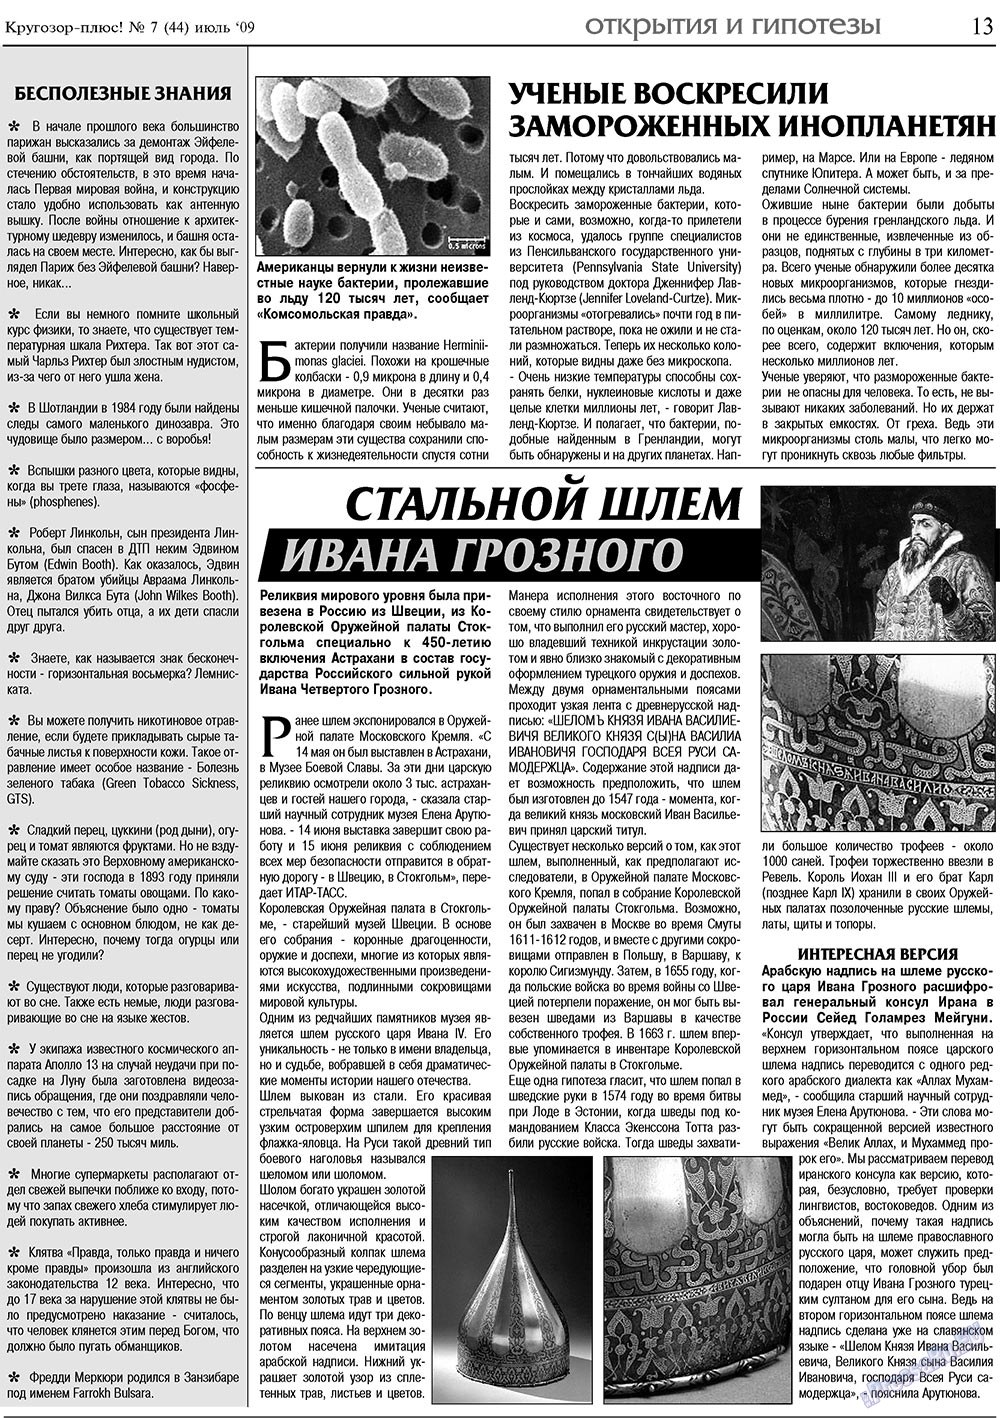 Кругозор плюс!, газета. 2009 №7 стр.13